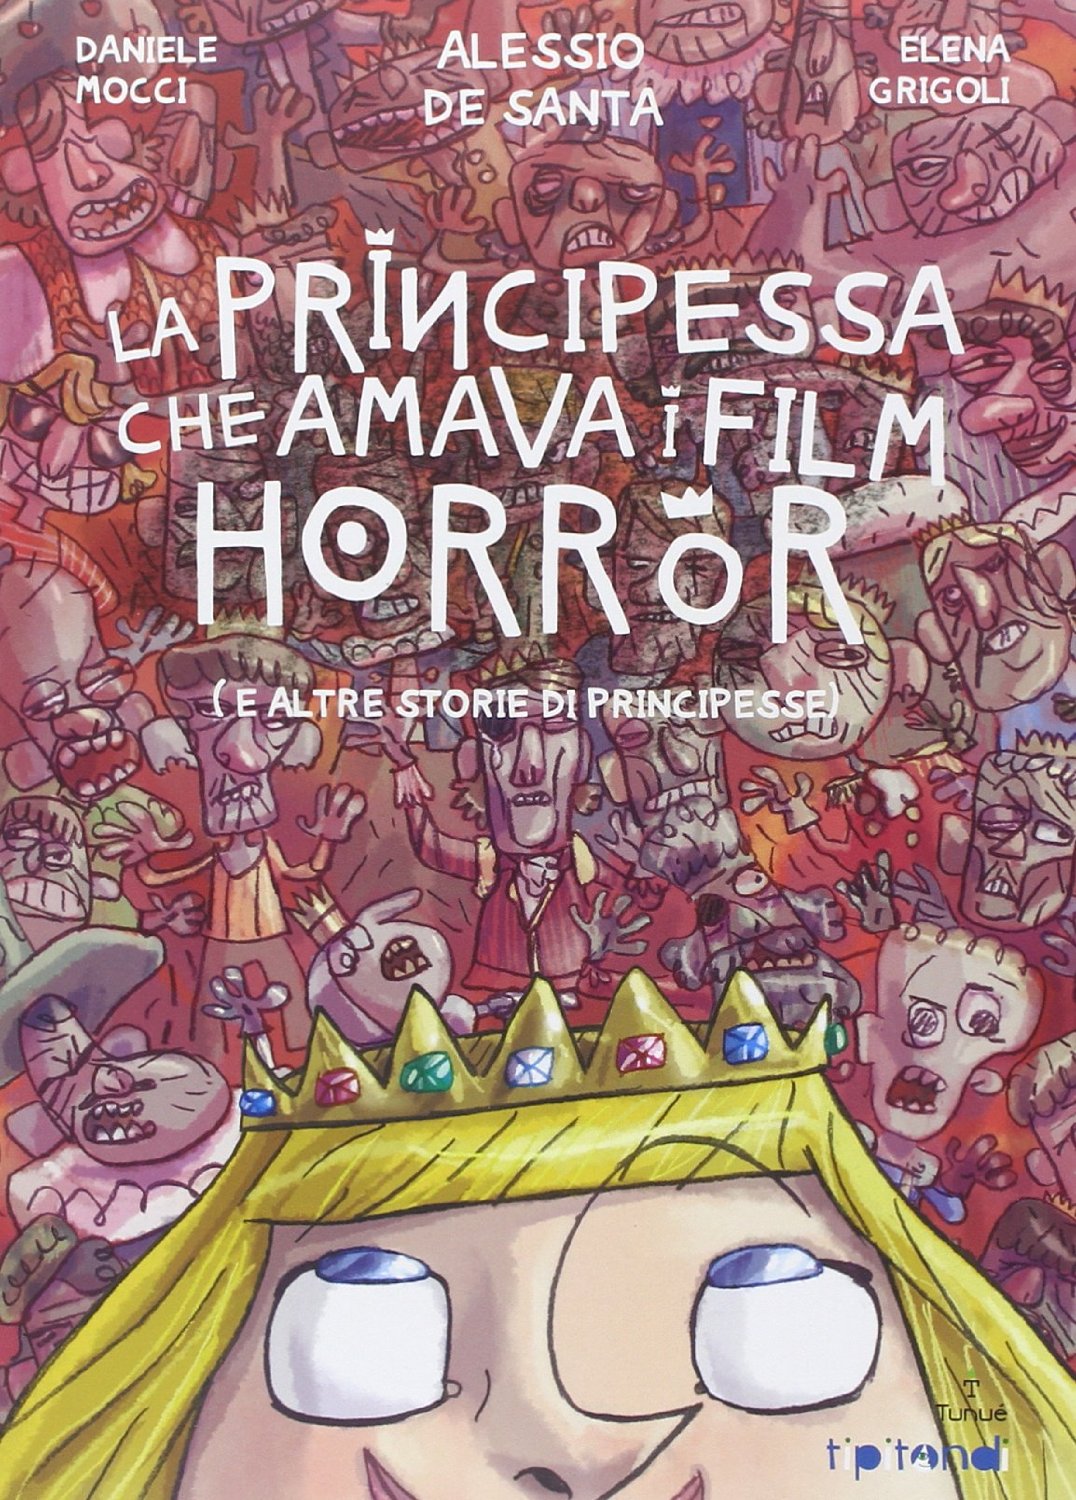 La principessa che amava i film Horror